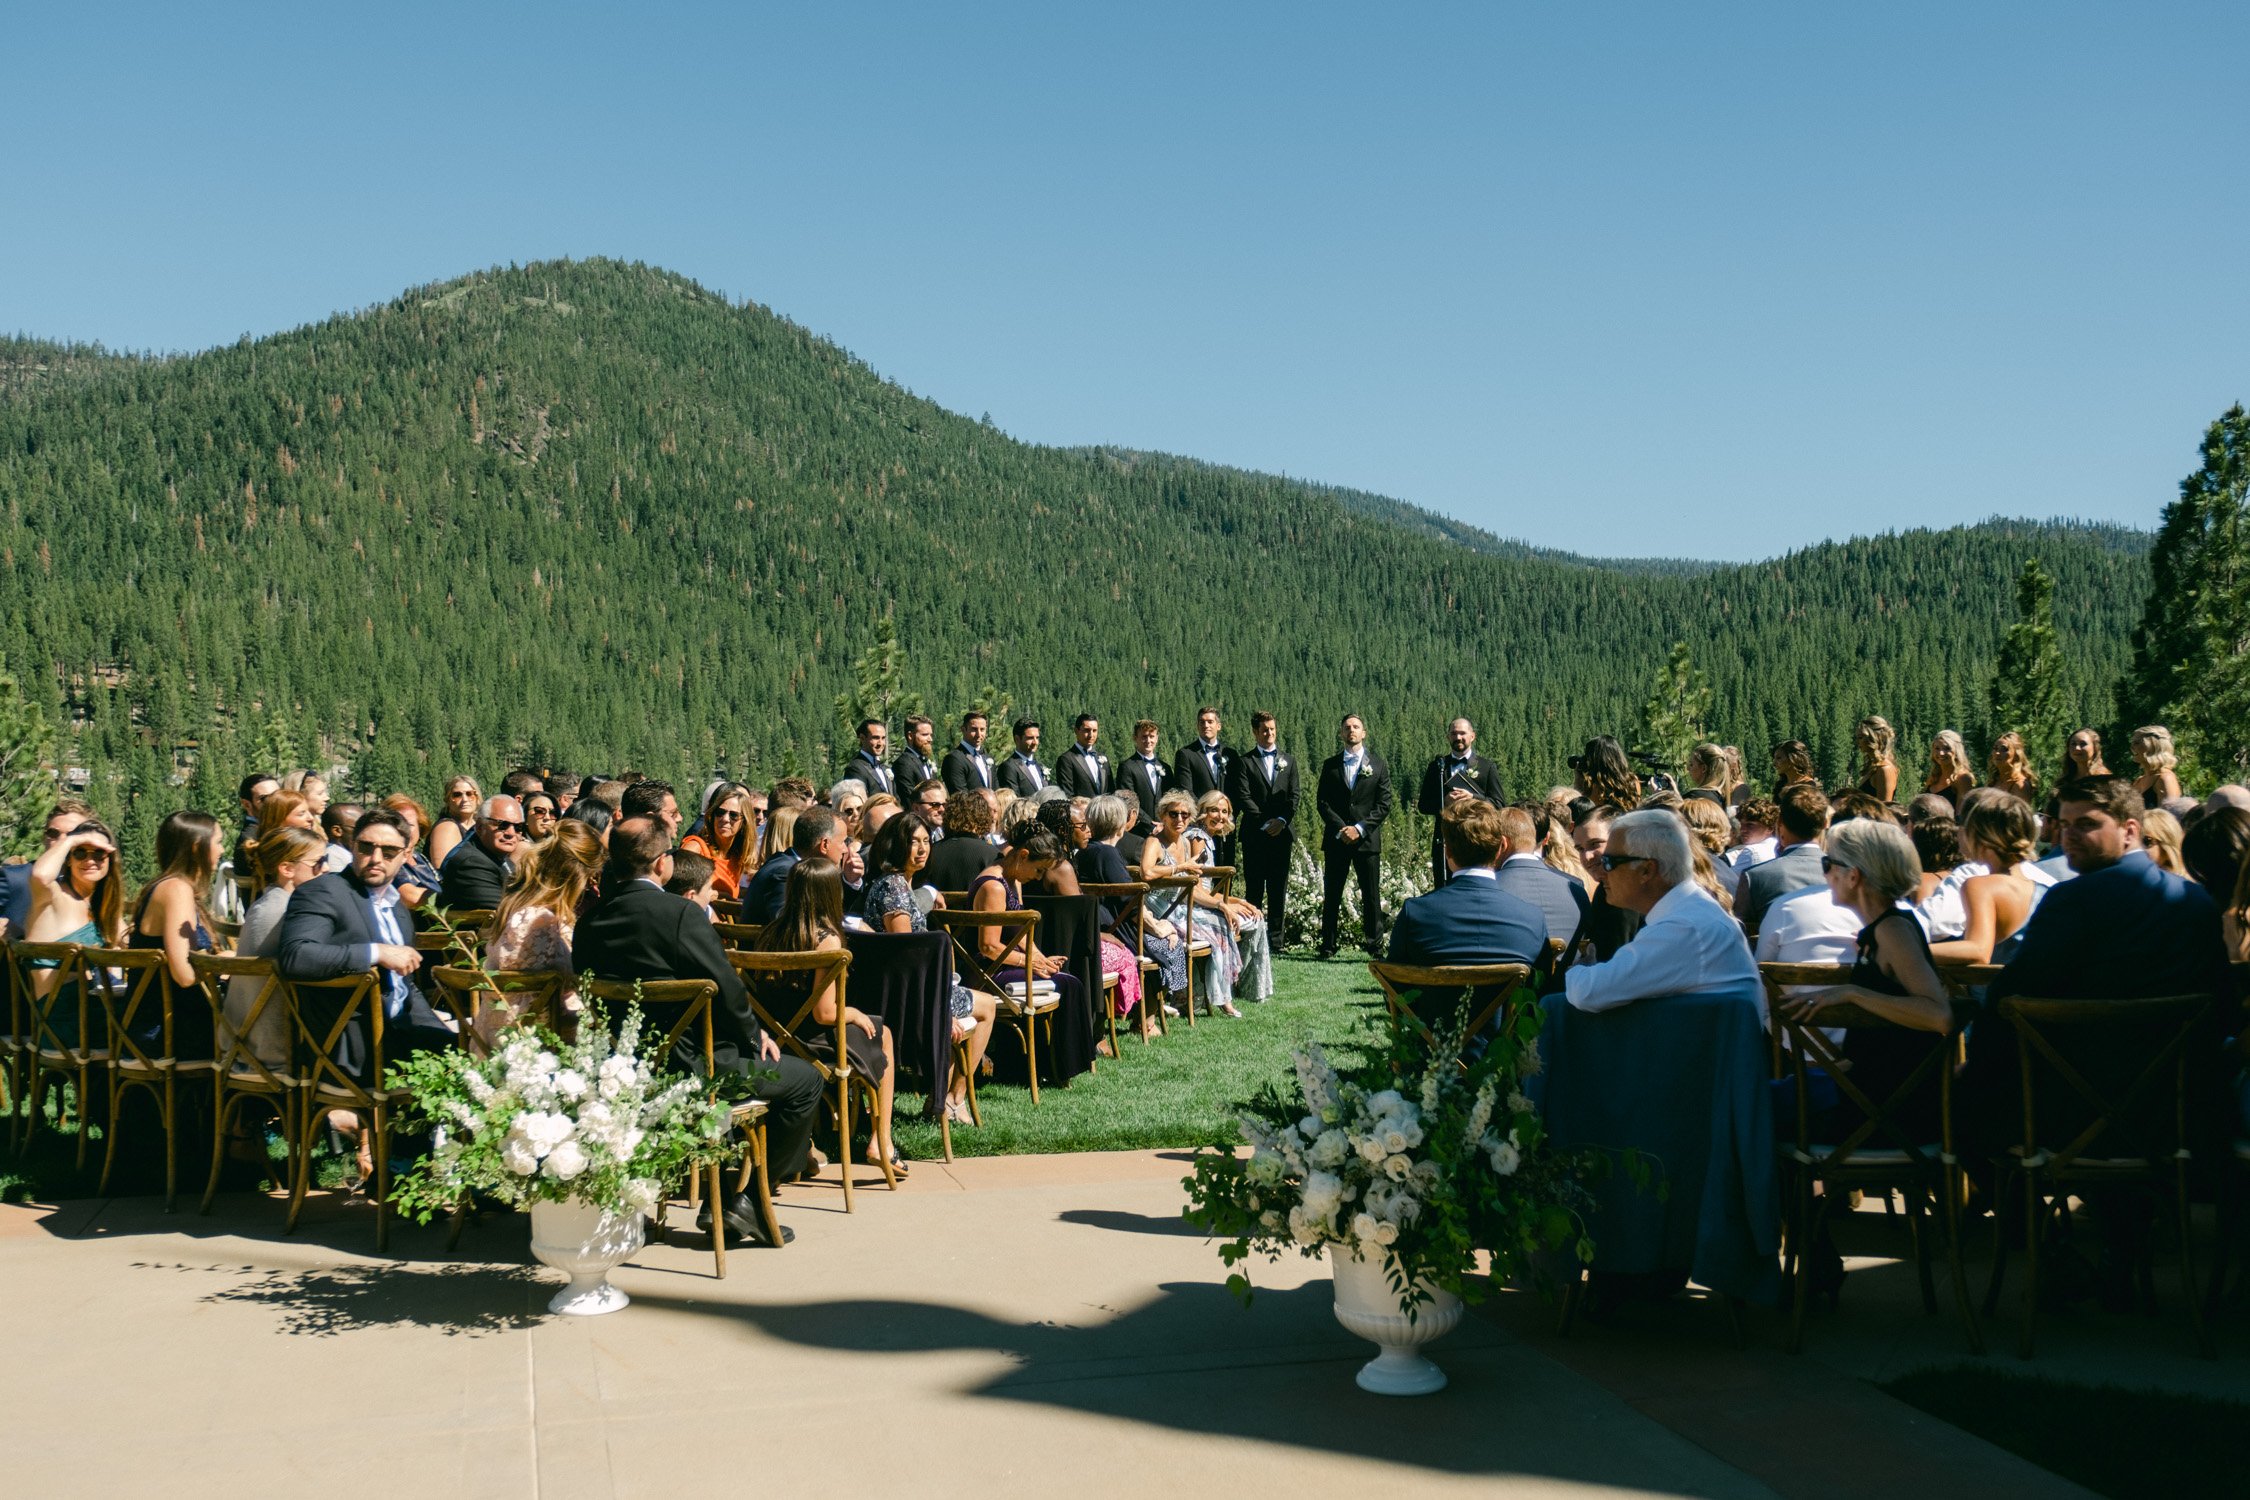 Martis Camp wedding, photo of a classic wedding ceremony 